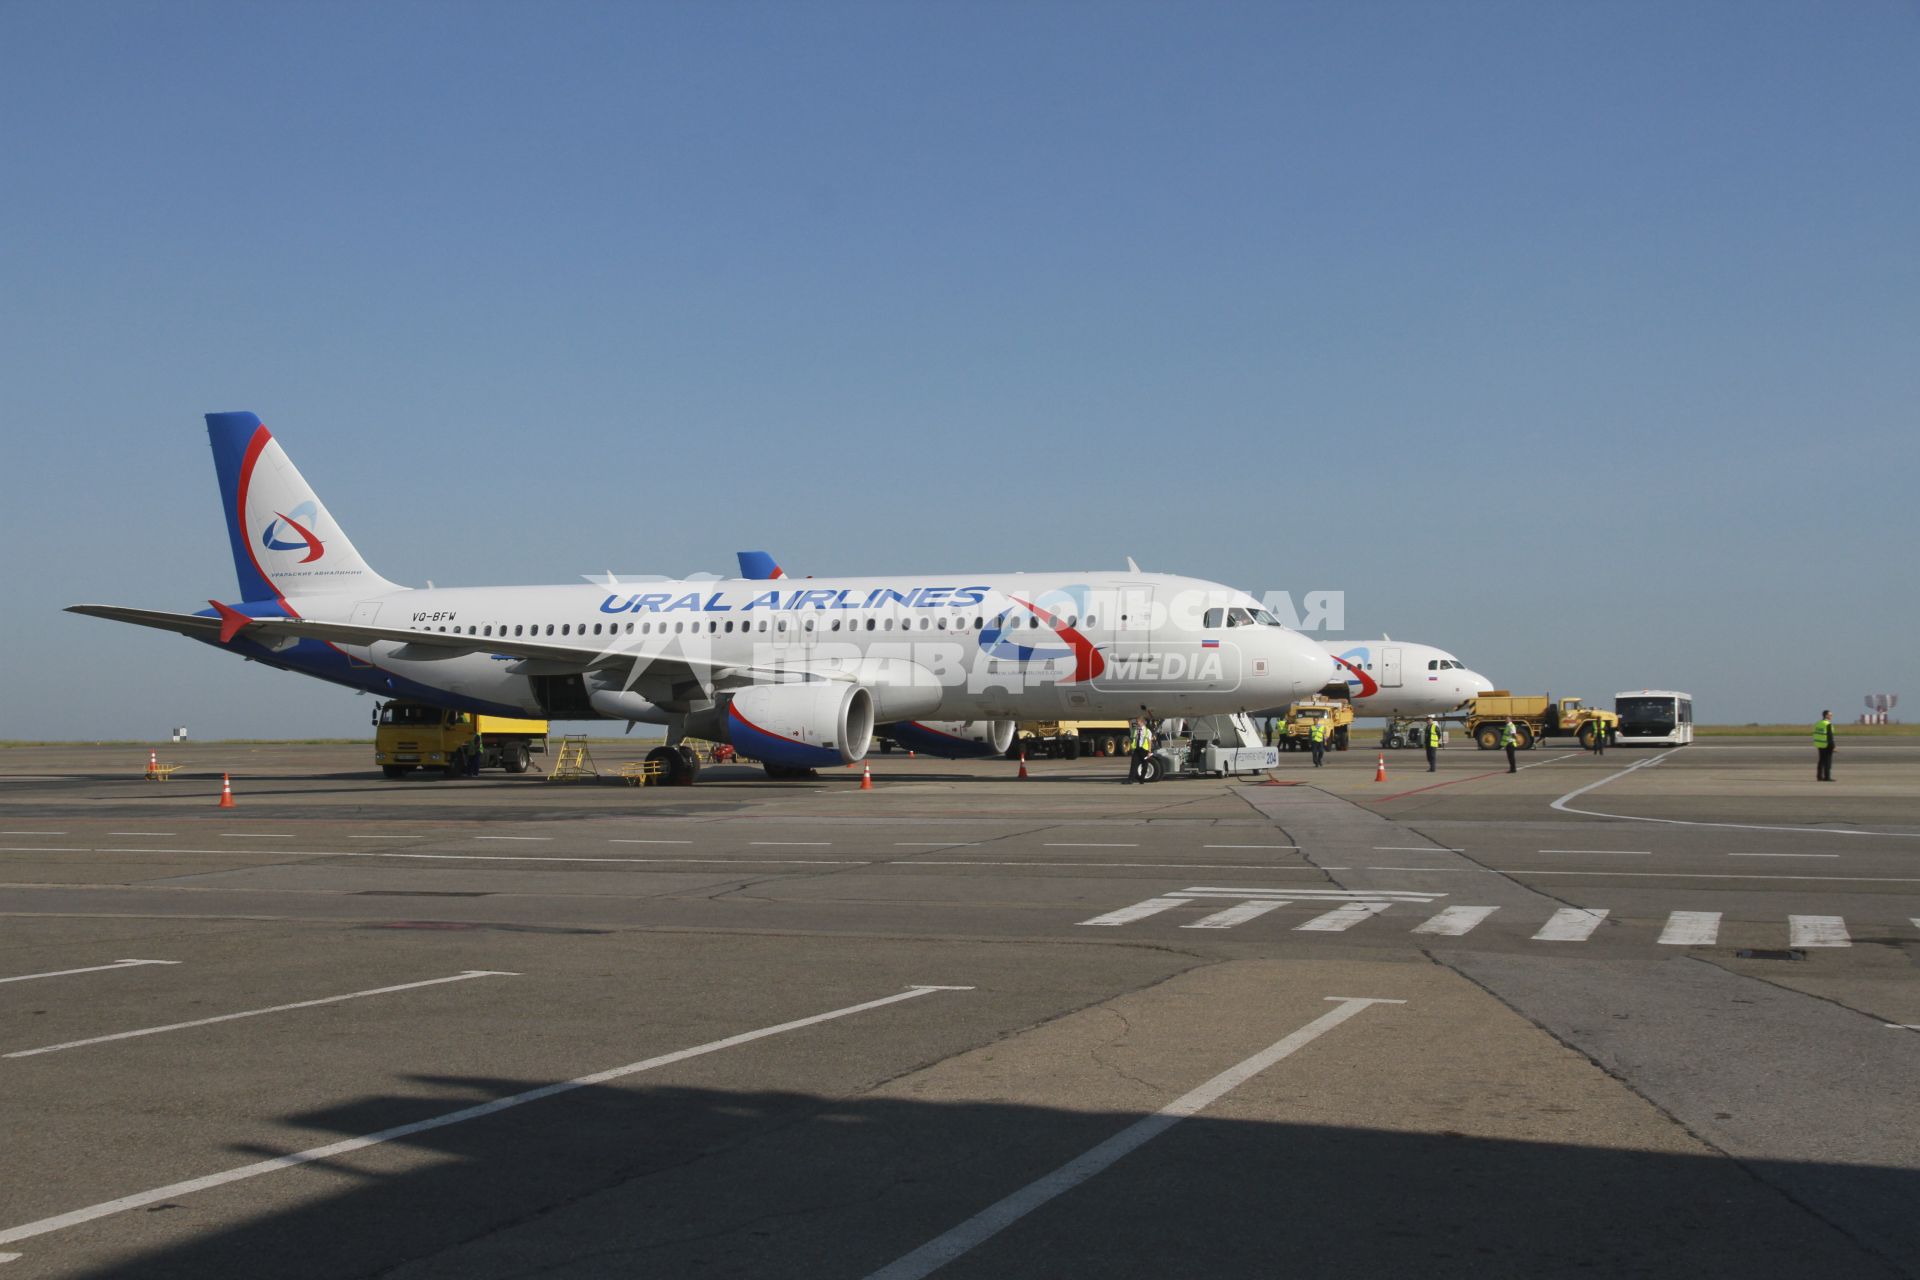 Барнаул. Самолет Airbus A320 российской авиакомпании Ural Airlines на взлетной полосе в барнаульском аэропорту.